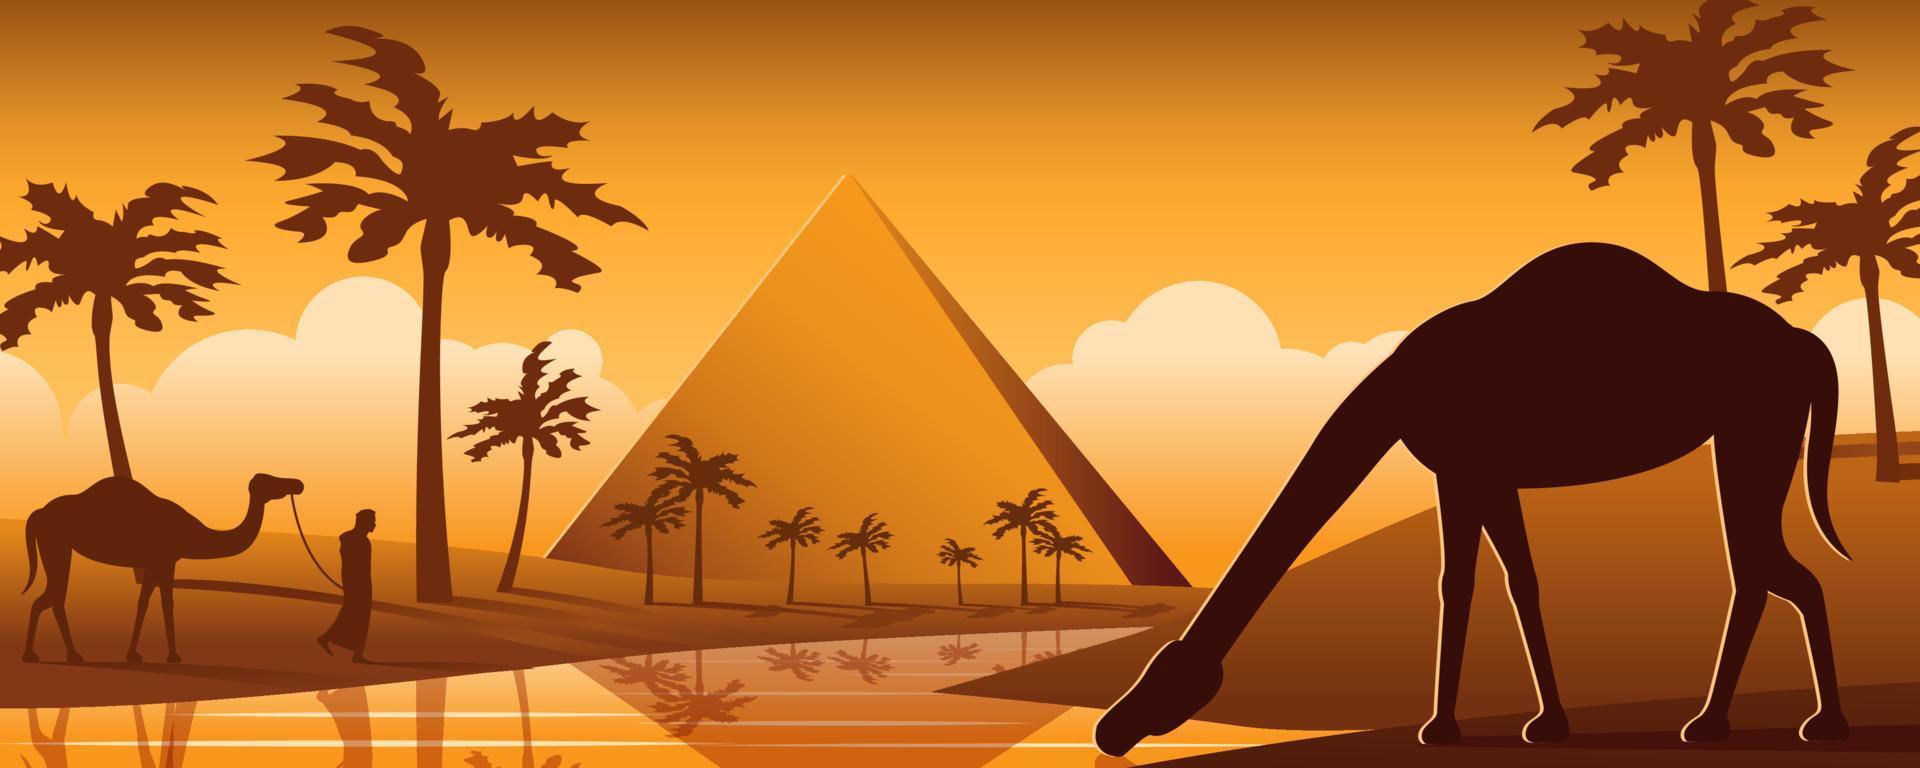 camello bebe agua en el desierto de oasis cerca de la pirámide, diseño de  dibujos animados de silueta 5116567 Vector en Vecteezy